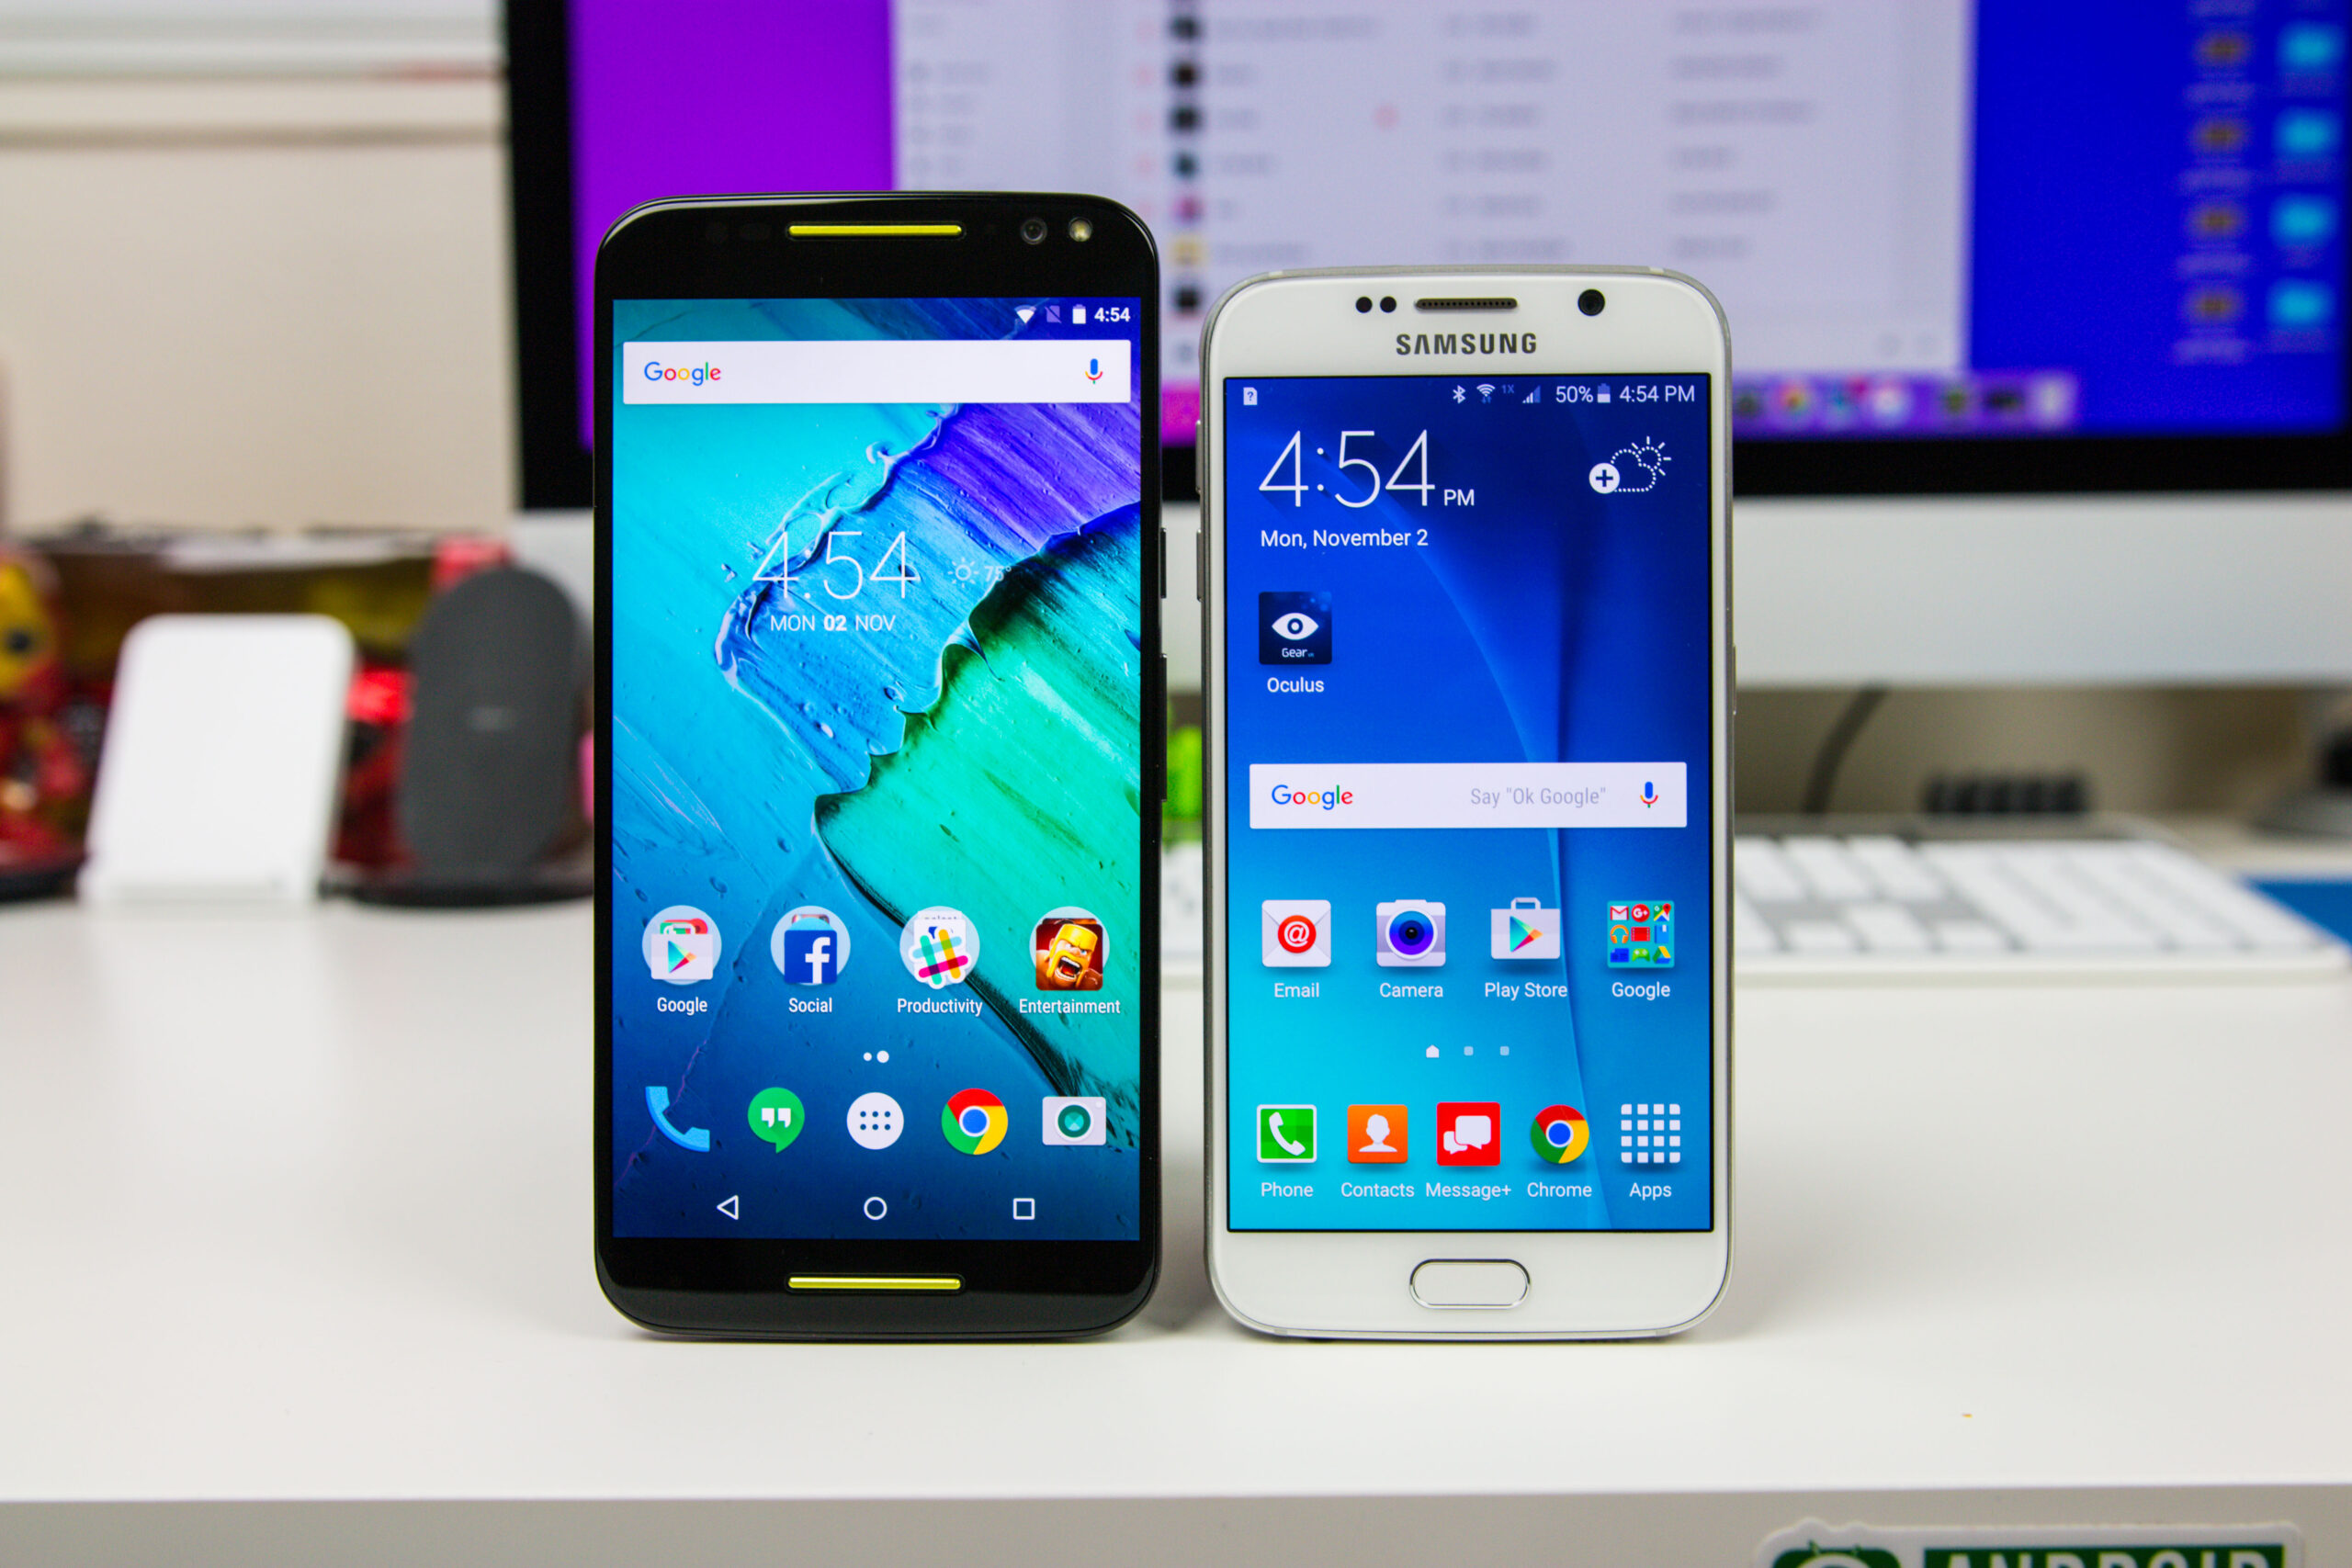 Moto X Pure Edition VS Samsung Galaxy S6-7